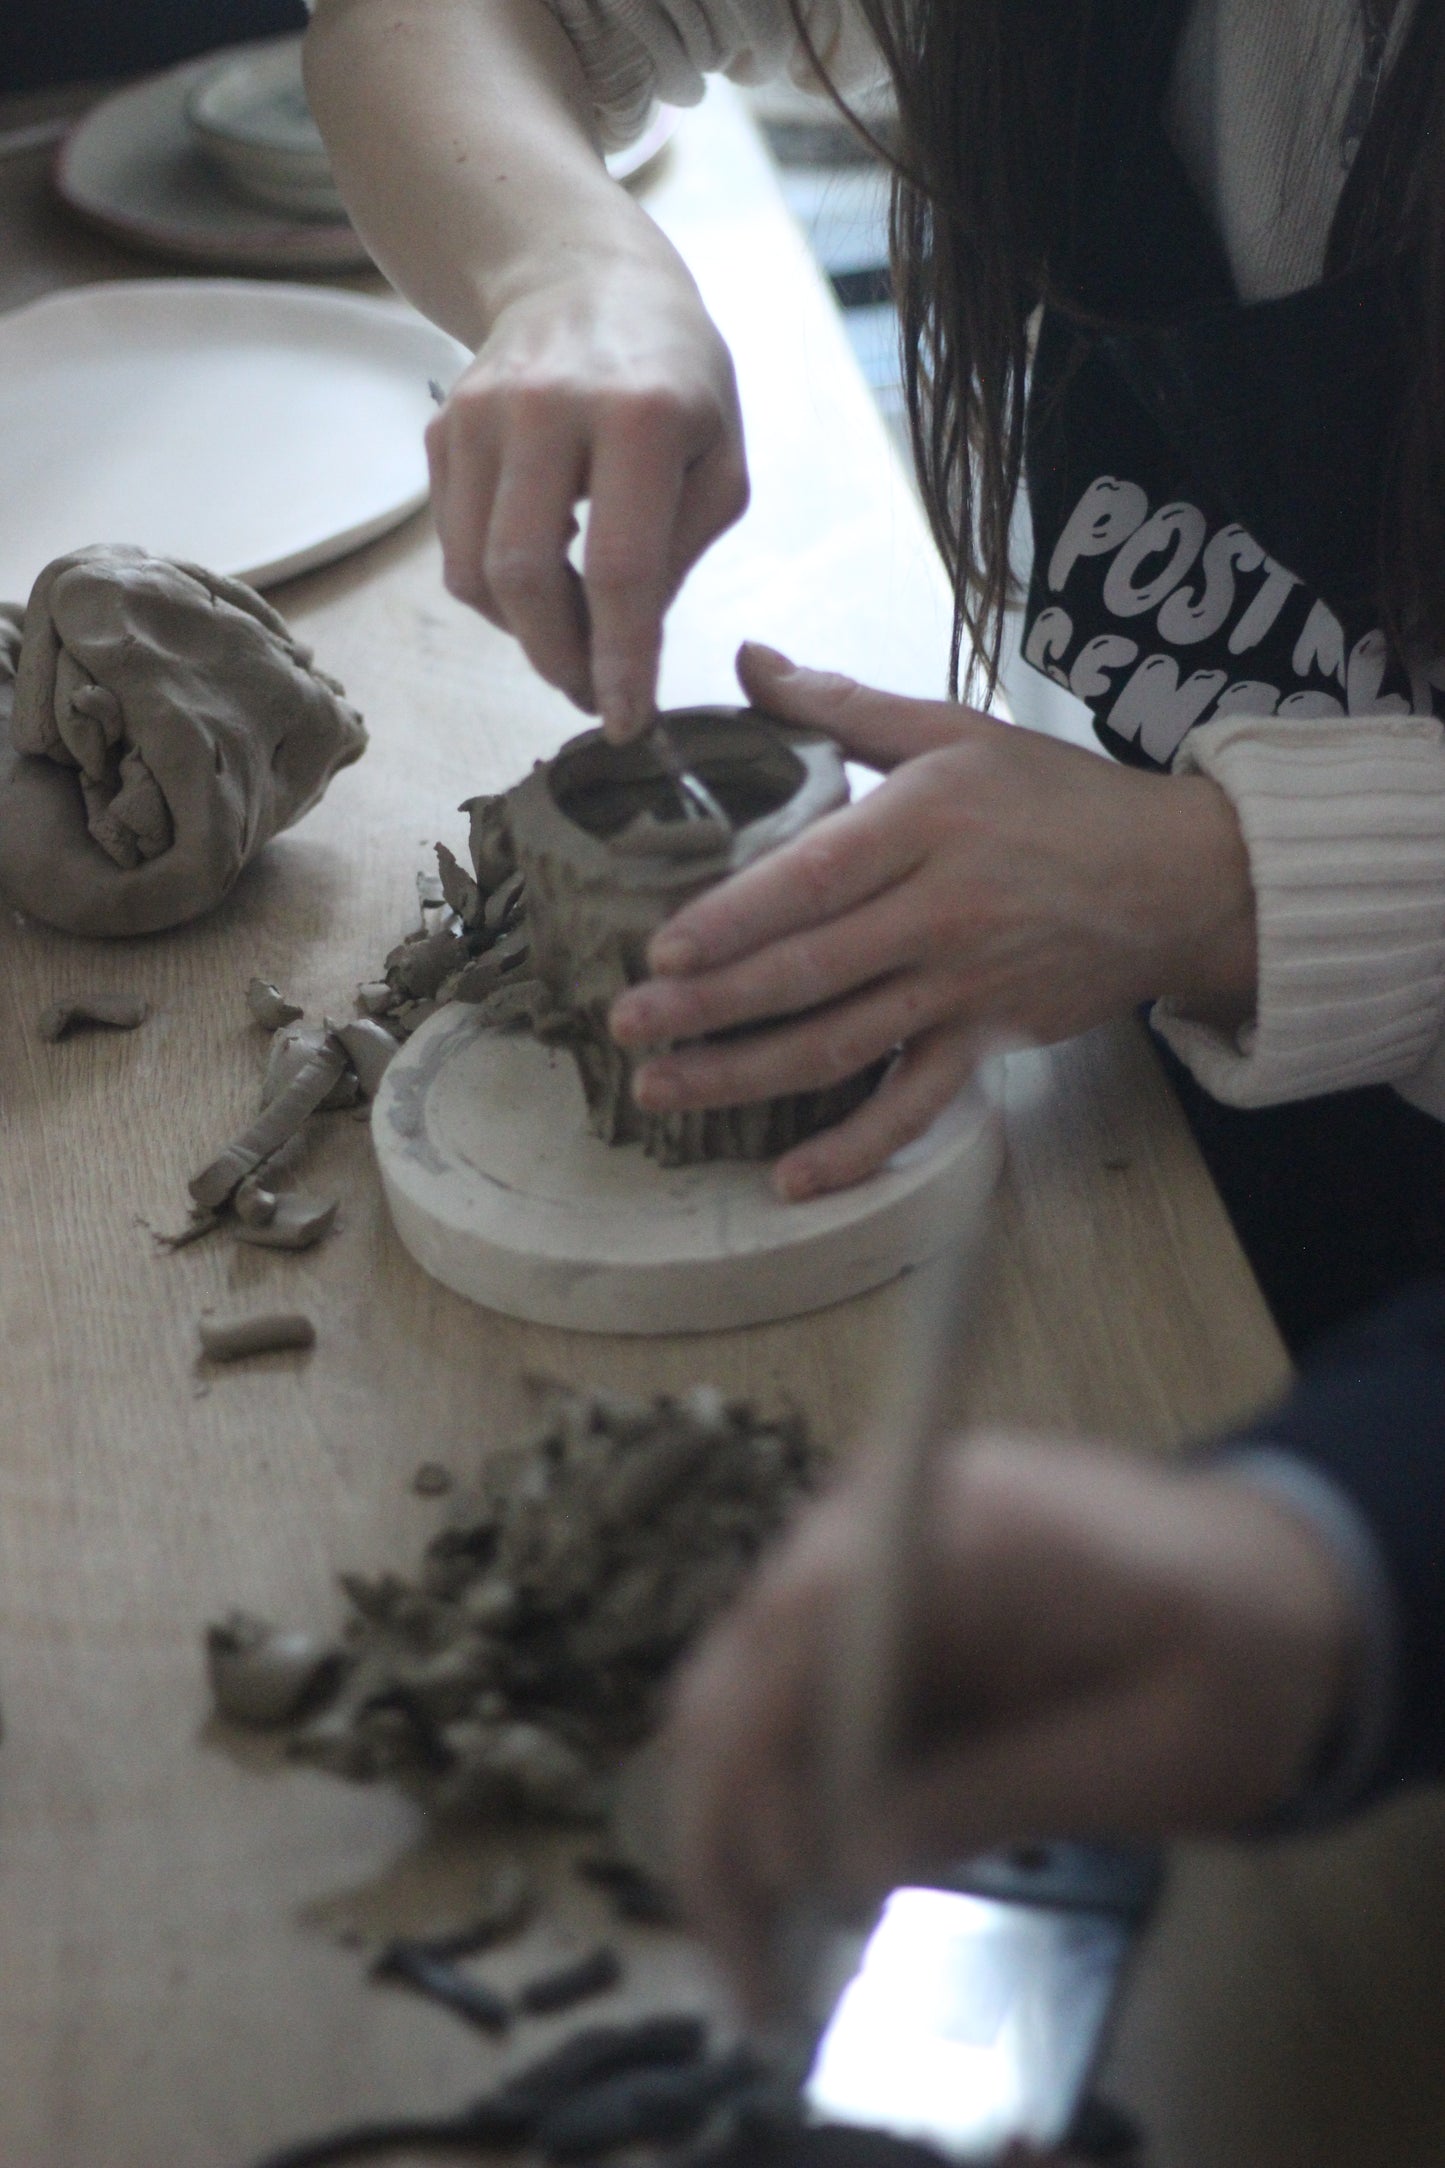 Kurinuki for Beginners - Carving a ceramic tea cup